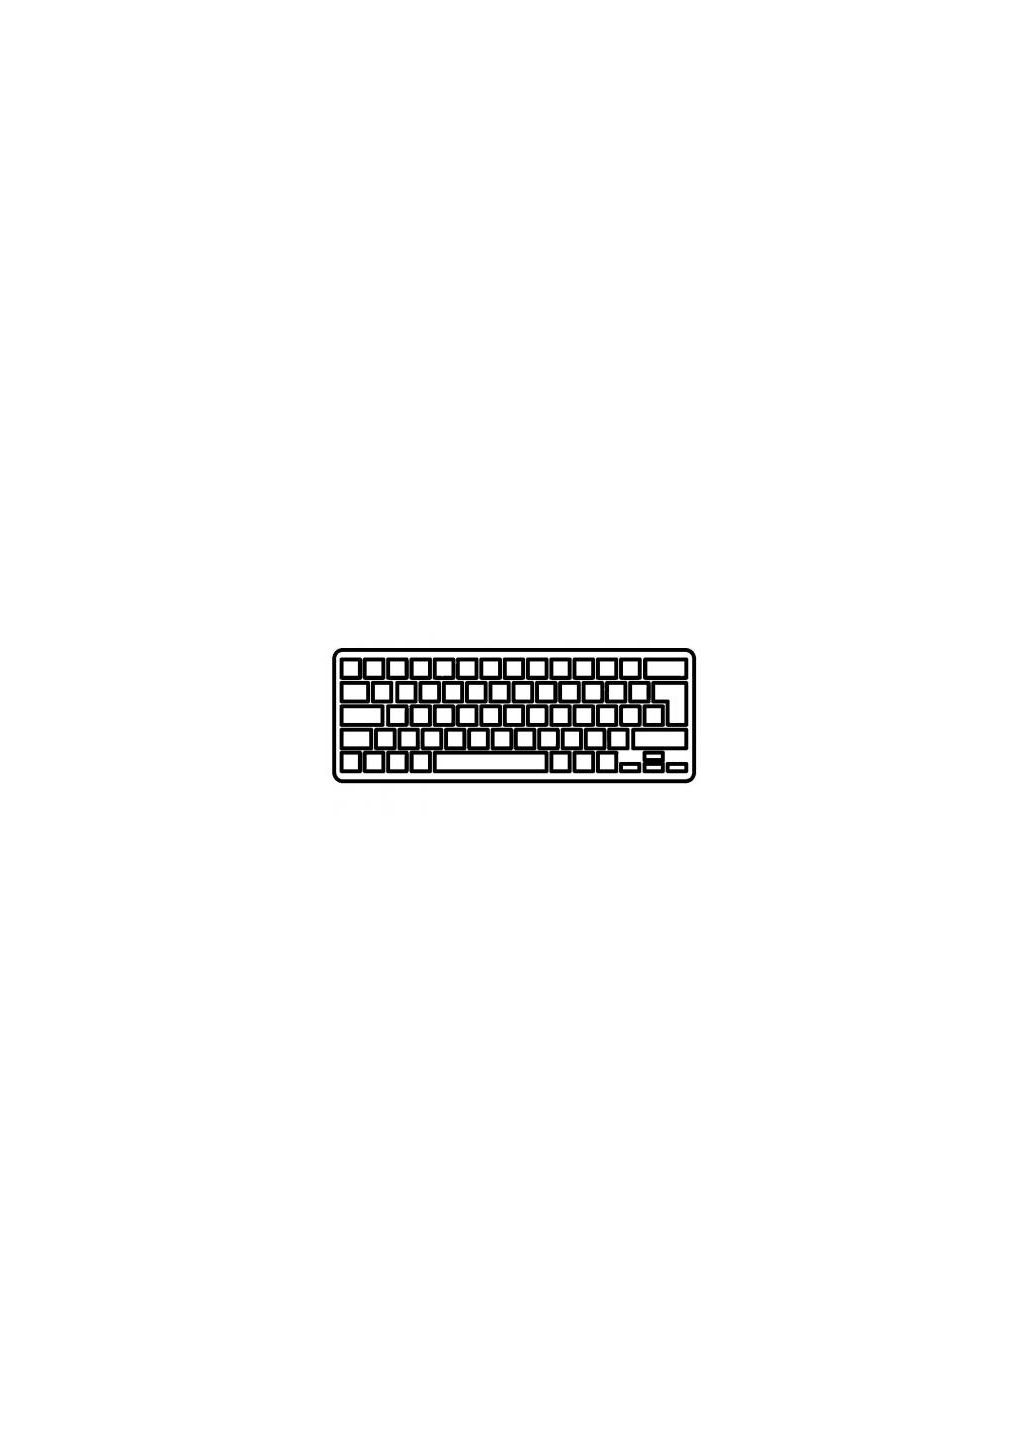 Клавиатура для ноутбука Aspire V5471/V5-431/M5-481 черная без рамки подсветка UA (A43863) Acer aspire v5-471/v5-431/m5-481 черная без рамки подсв (276706611)